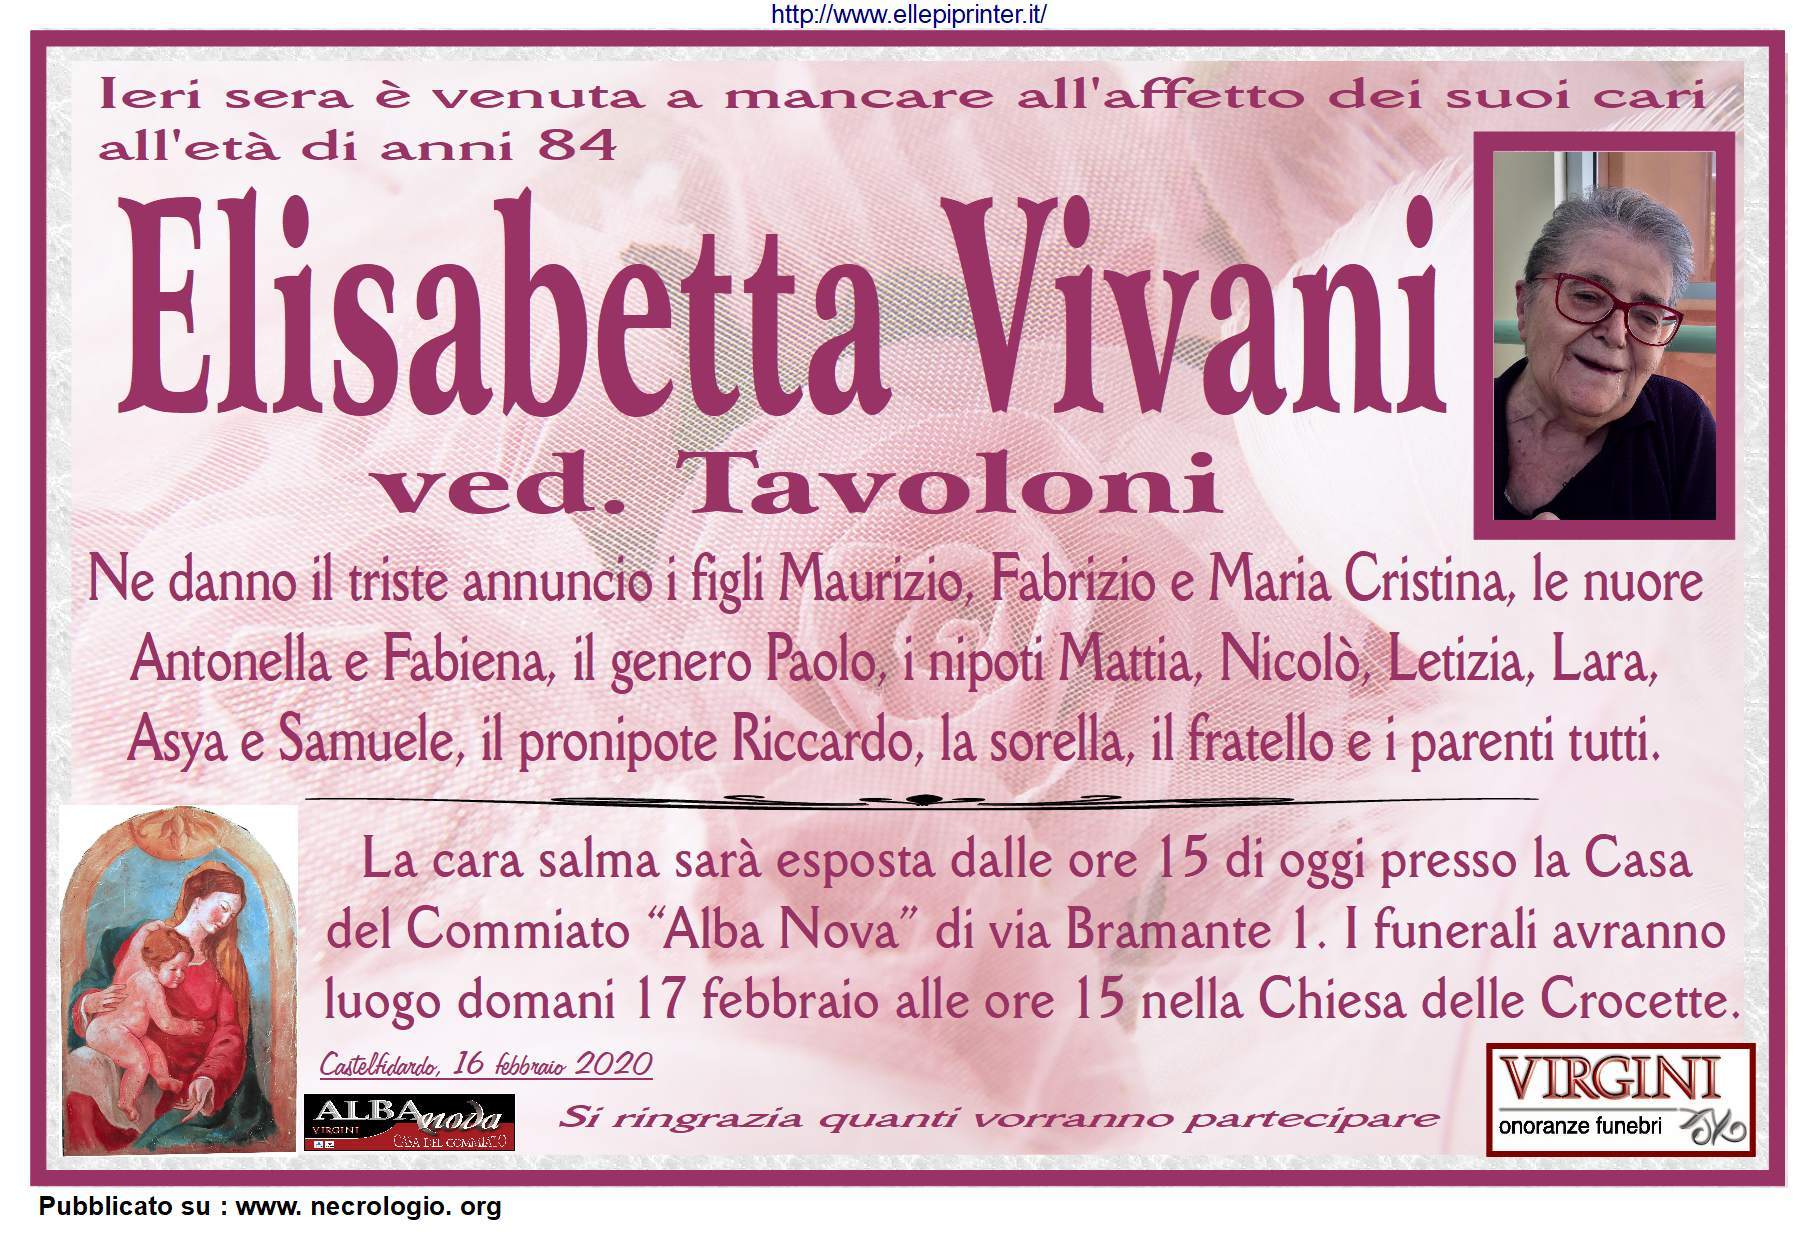 Elisabetta Vivani